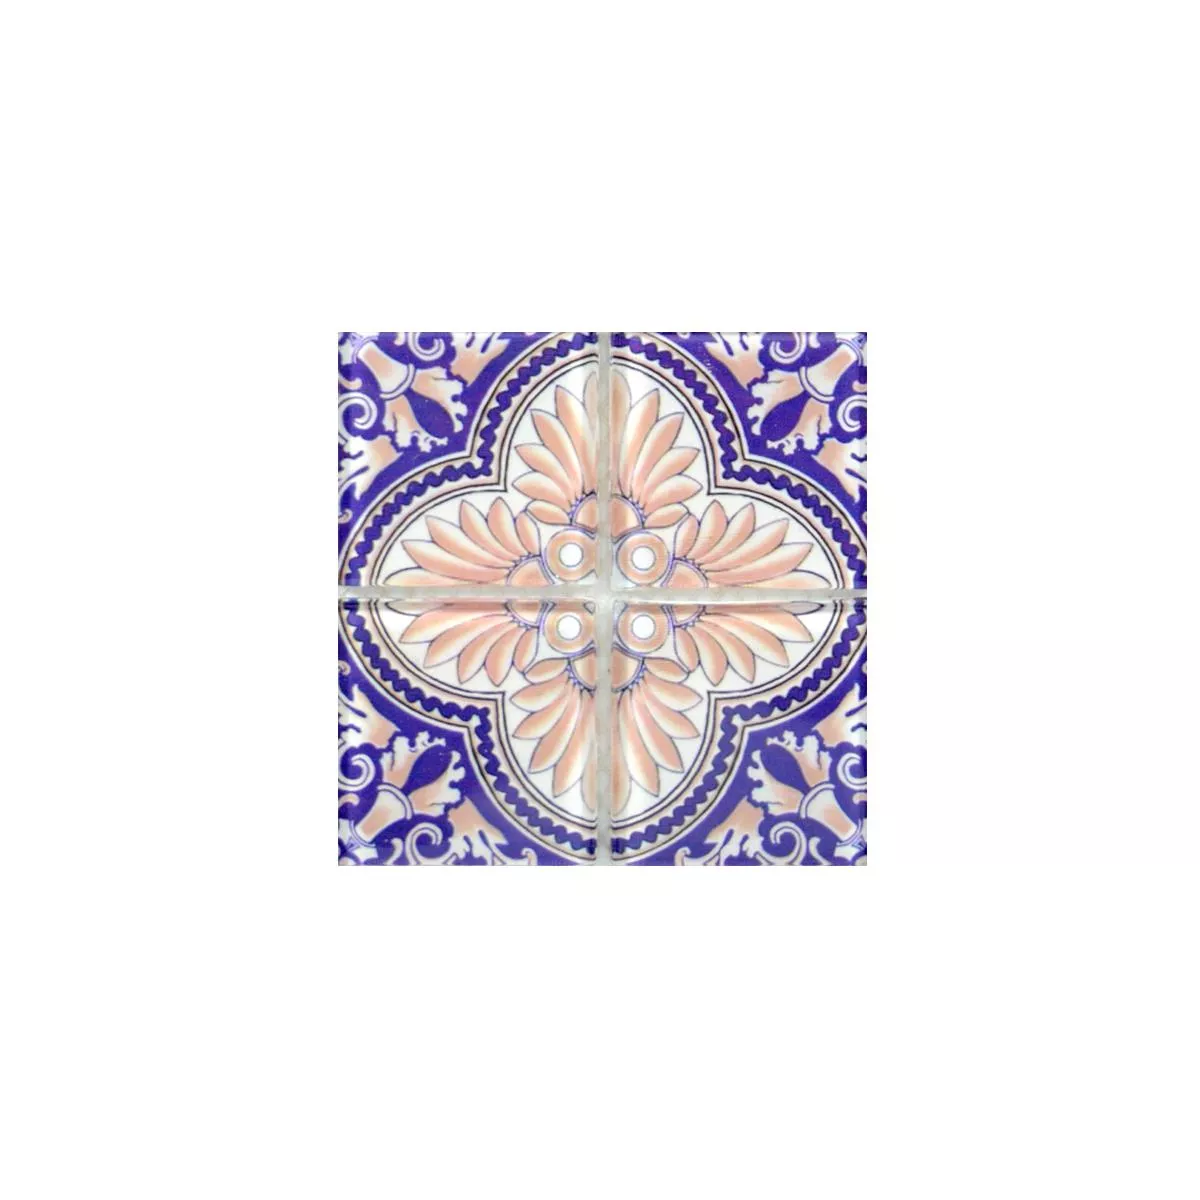 Muestra Mosaico De Cristal Azulejos Retro India Vintage Wohali